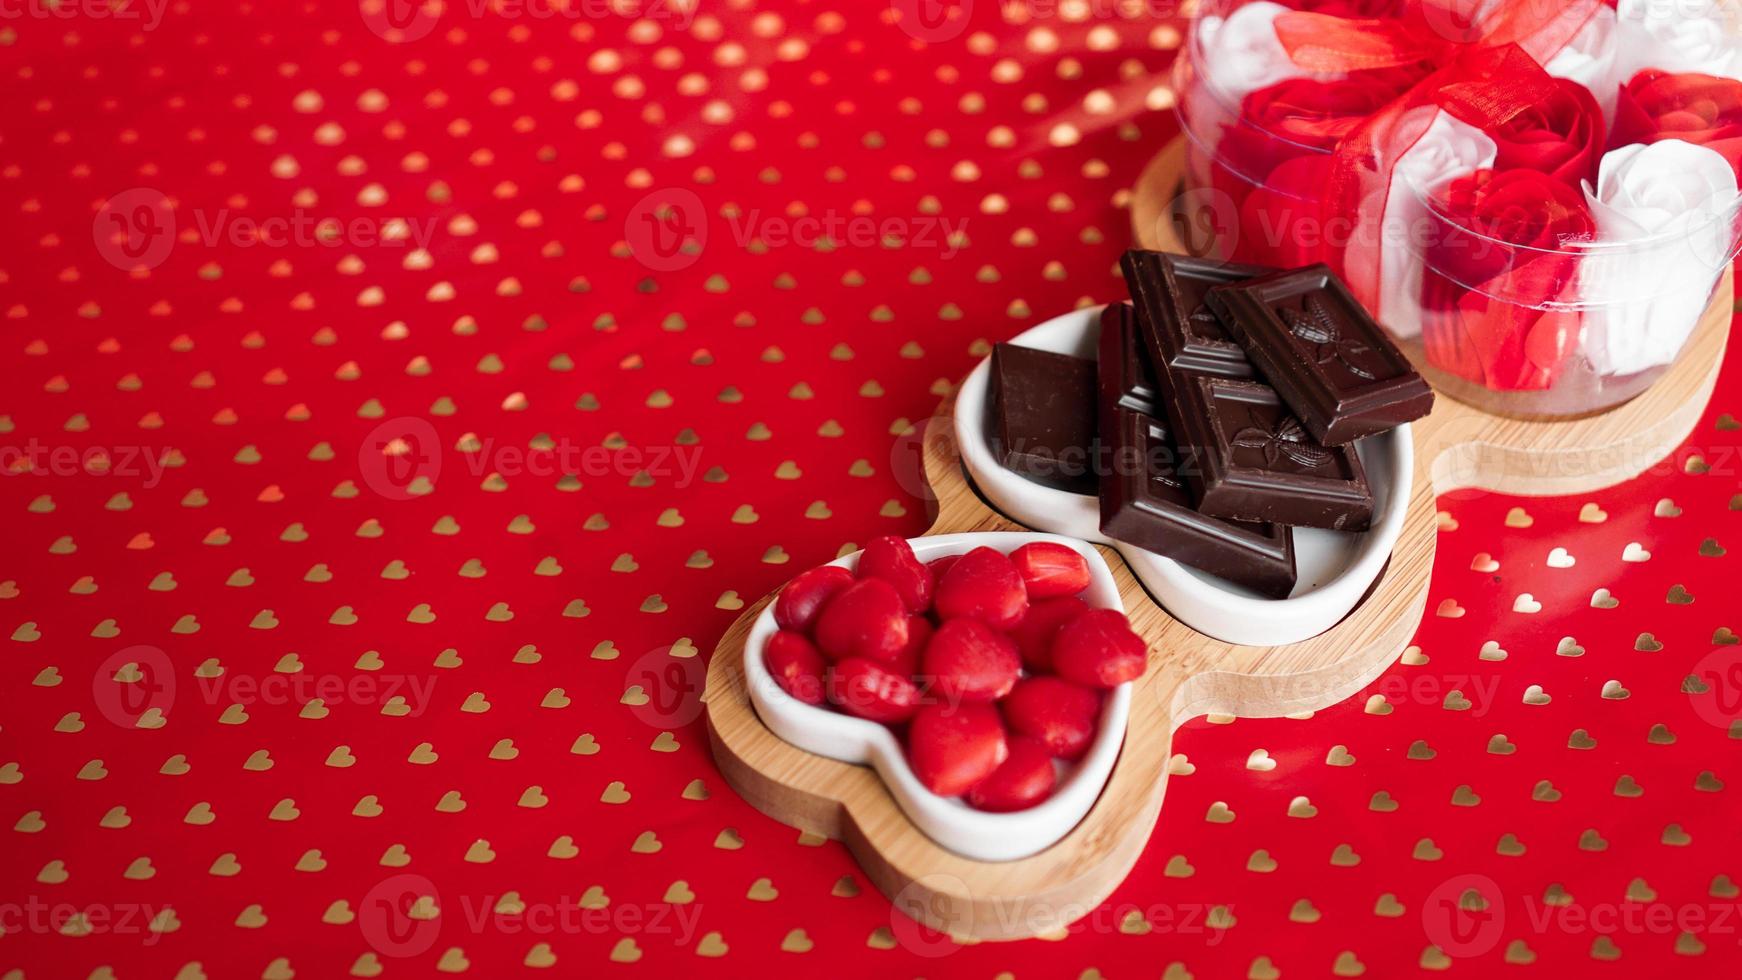 chocolats et bonbons sur des assiettes en forme de coeur photo